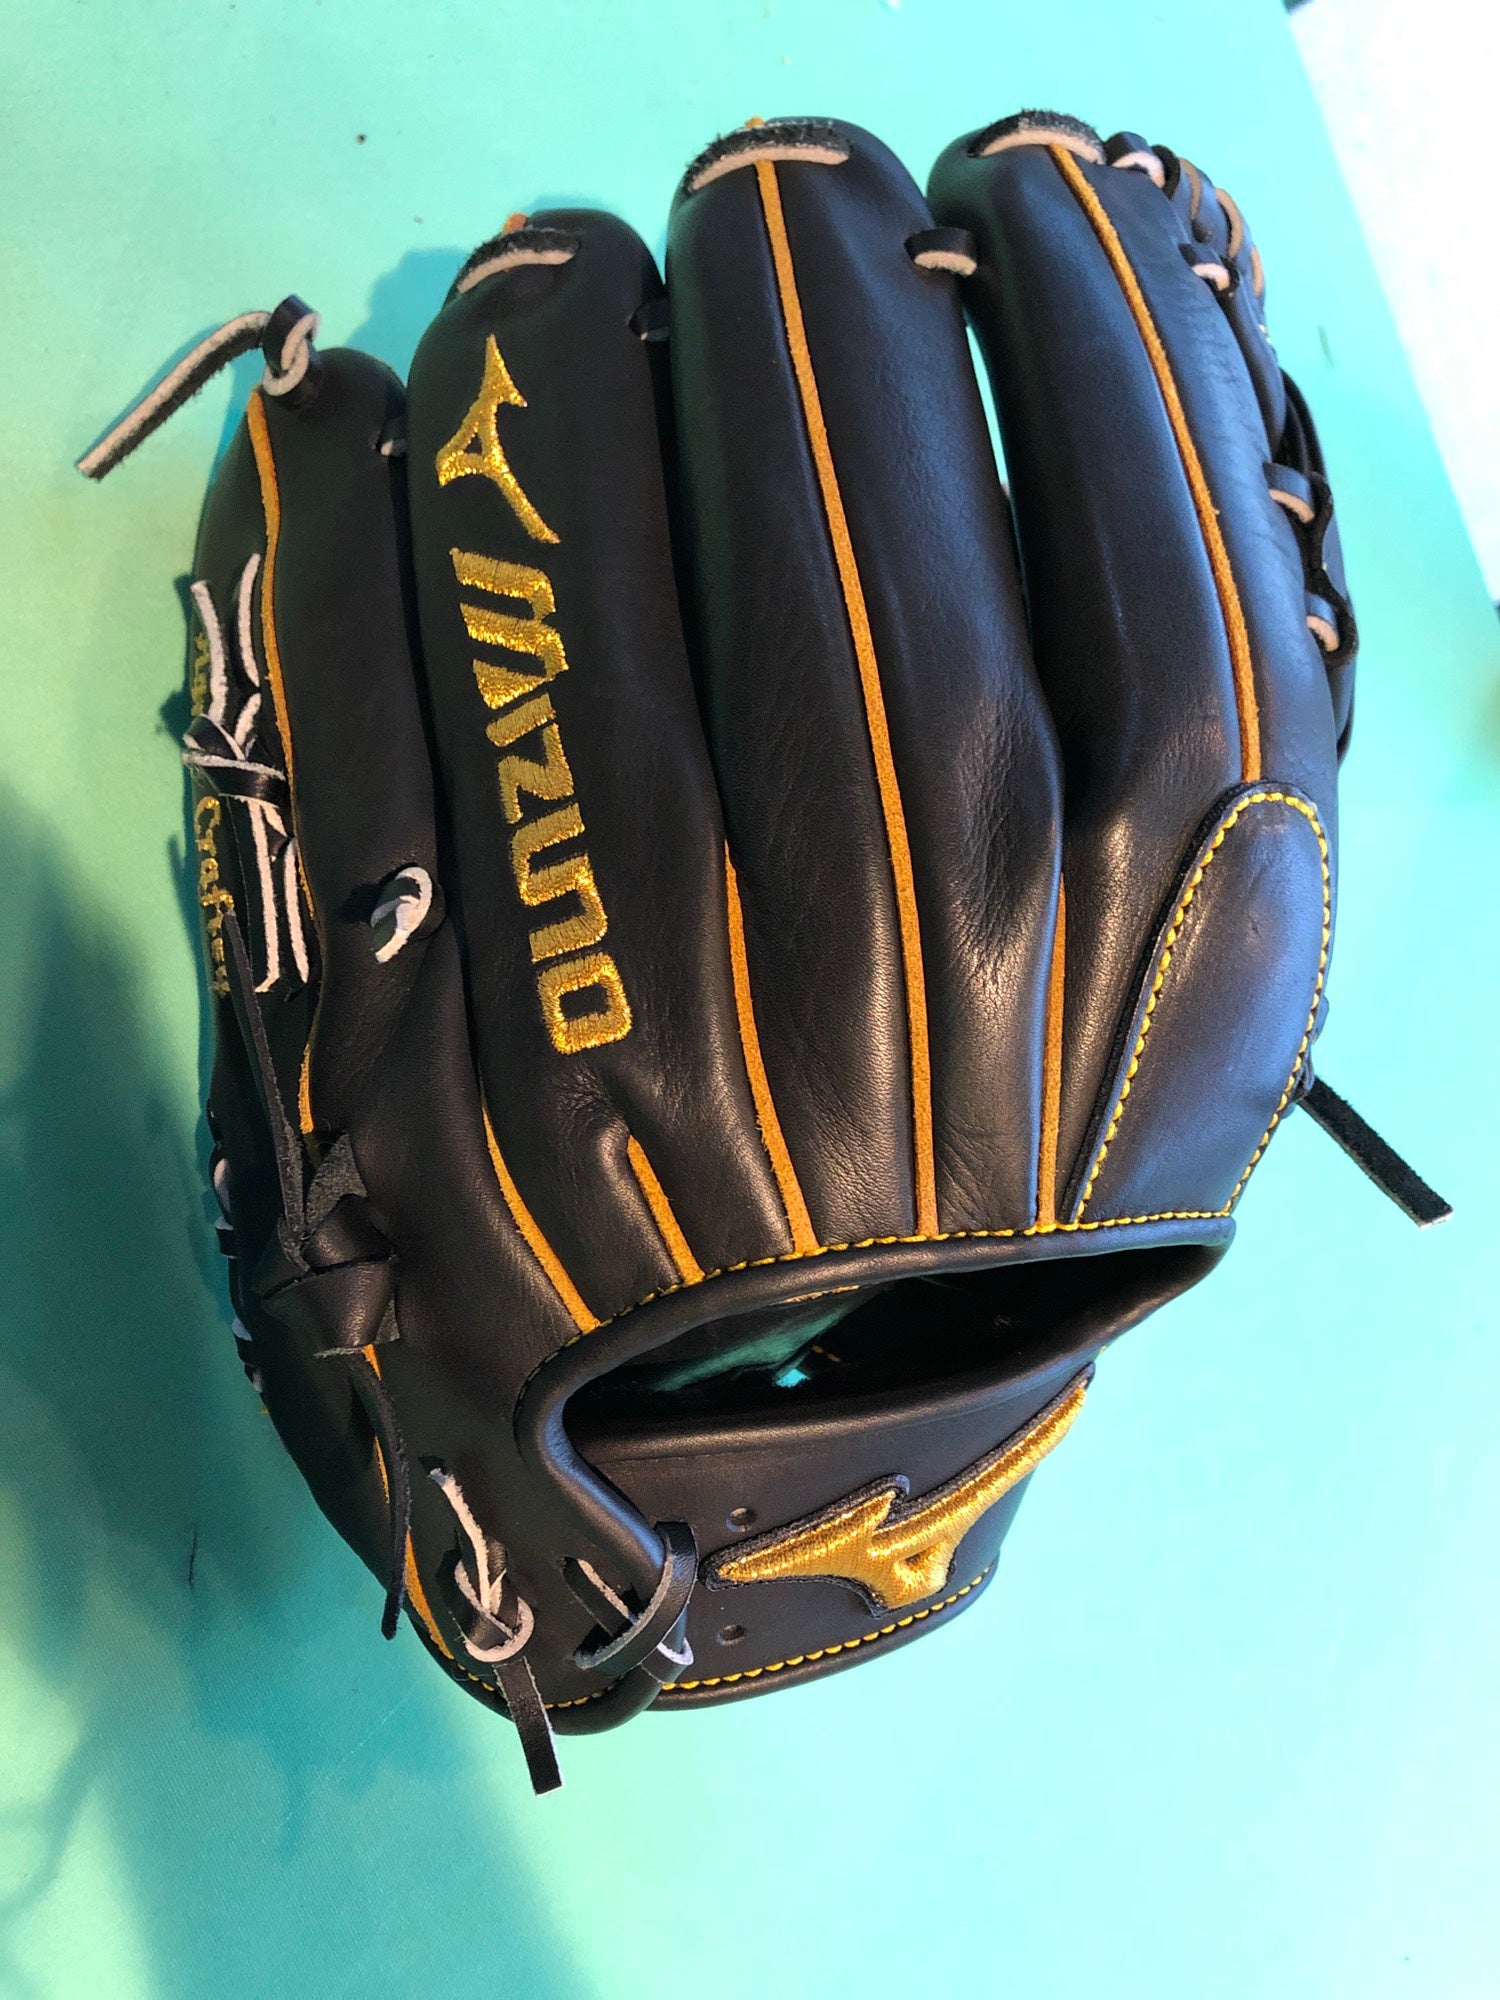 Mizuno Supreme Leather Baseball Glove 12.5 Inches MZS 1250 Max